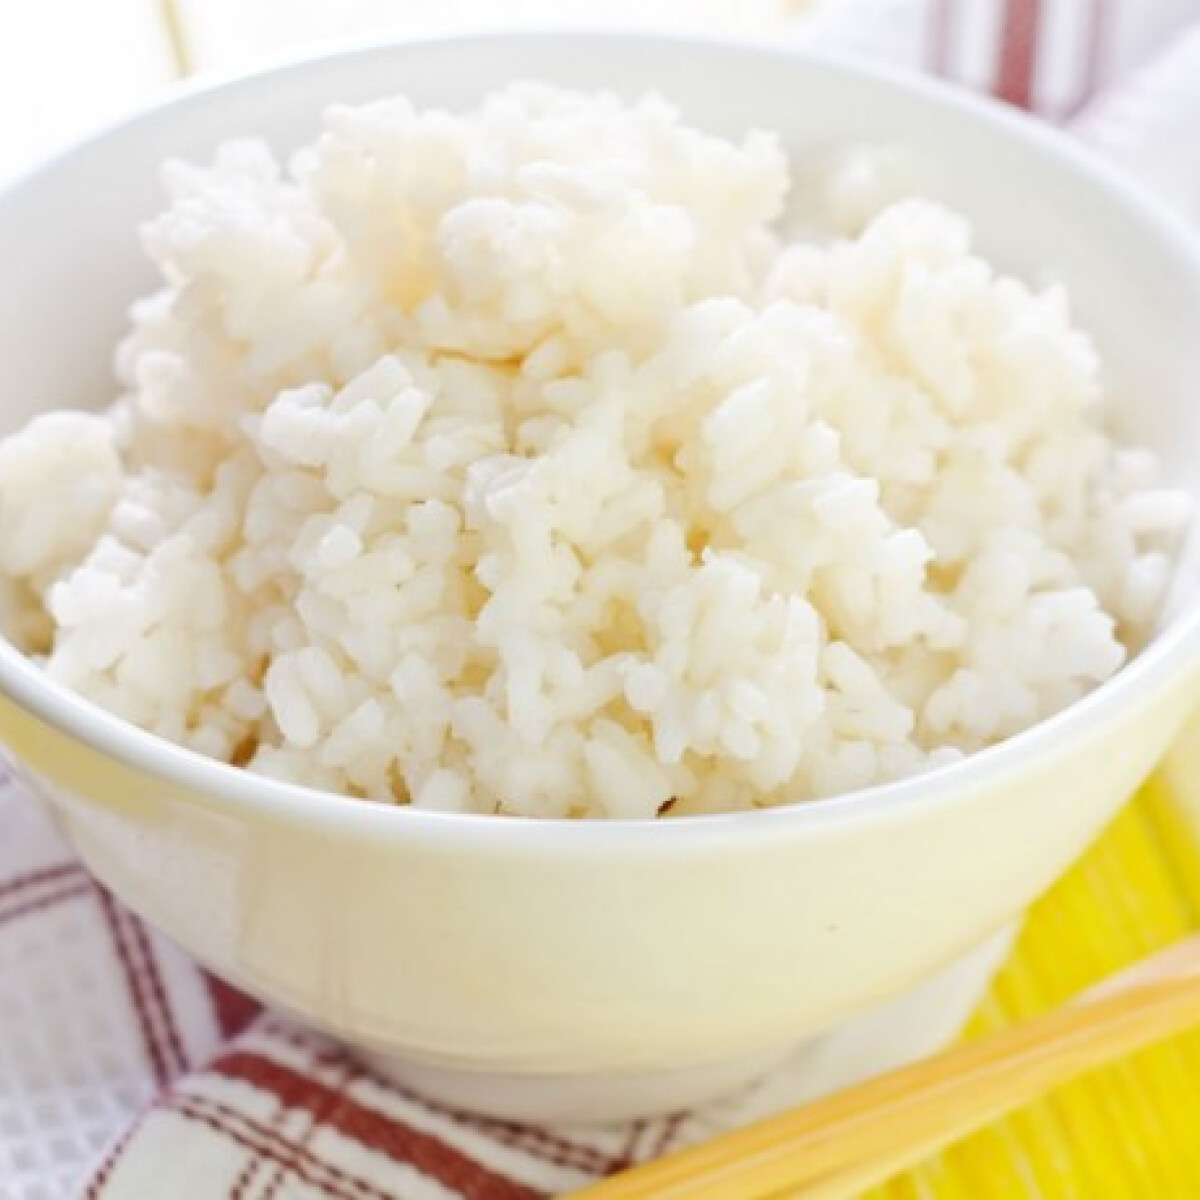 Kiderült, hogy eddig mindenki rosszul főzte a rizst, amiből nagy baj is lehet